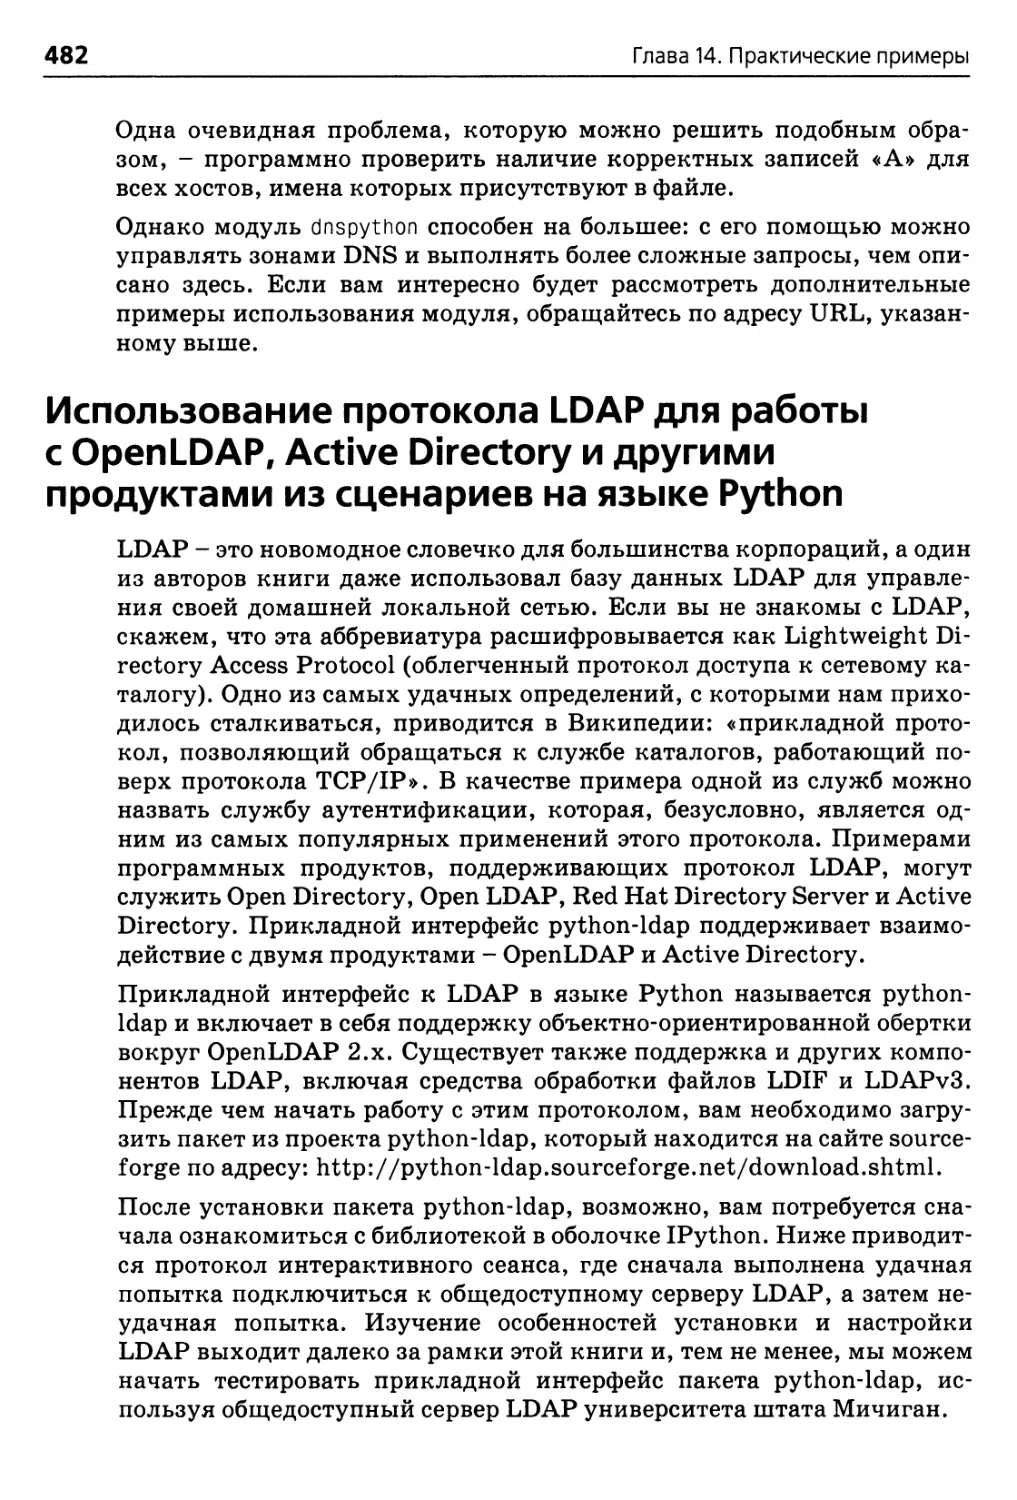 Использование протокола LDAP для работы с OpenLDAP, Active Directory и другими продуктами из сценариев на языке Python